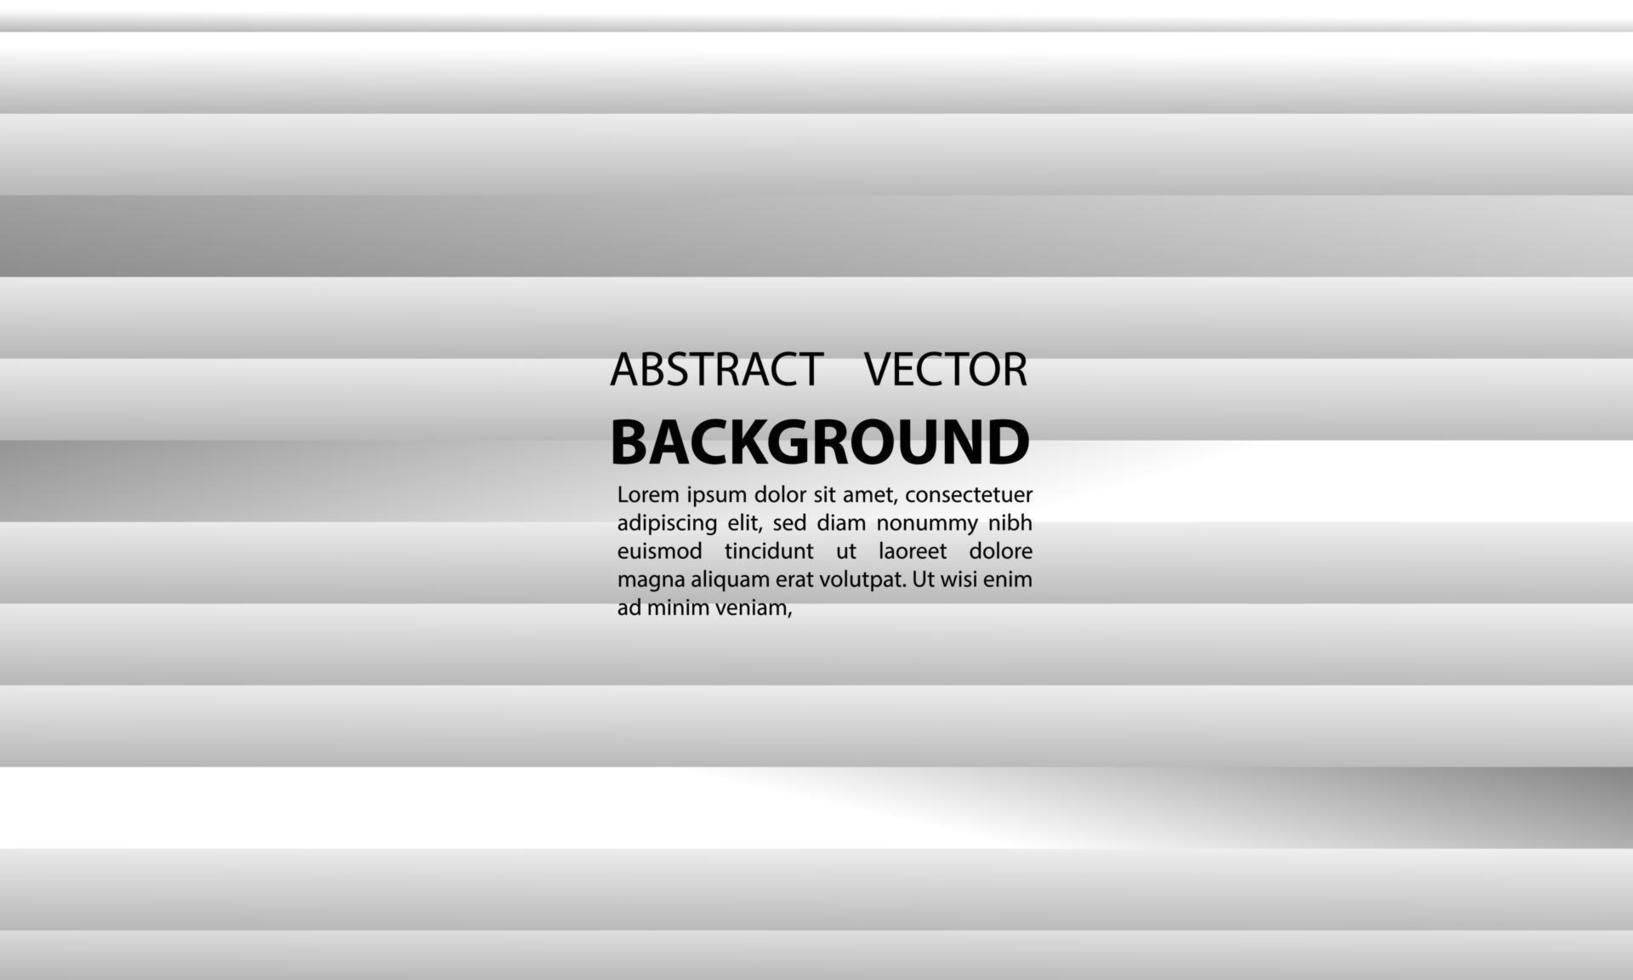 achtergrond abtrak gradiënt geometrische horizontale verical vorm abstracte lijnen van grijze vectoren, voor posters, banners en anderen, vector ontwerp illustratie eps 10